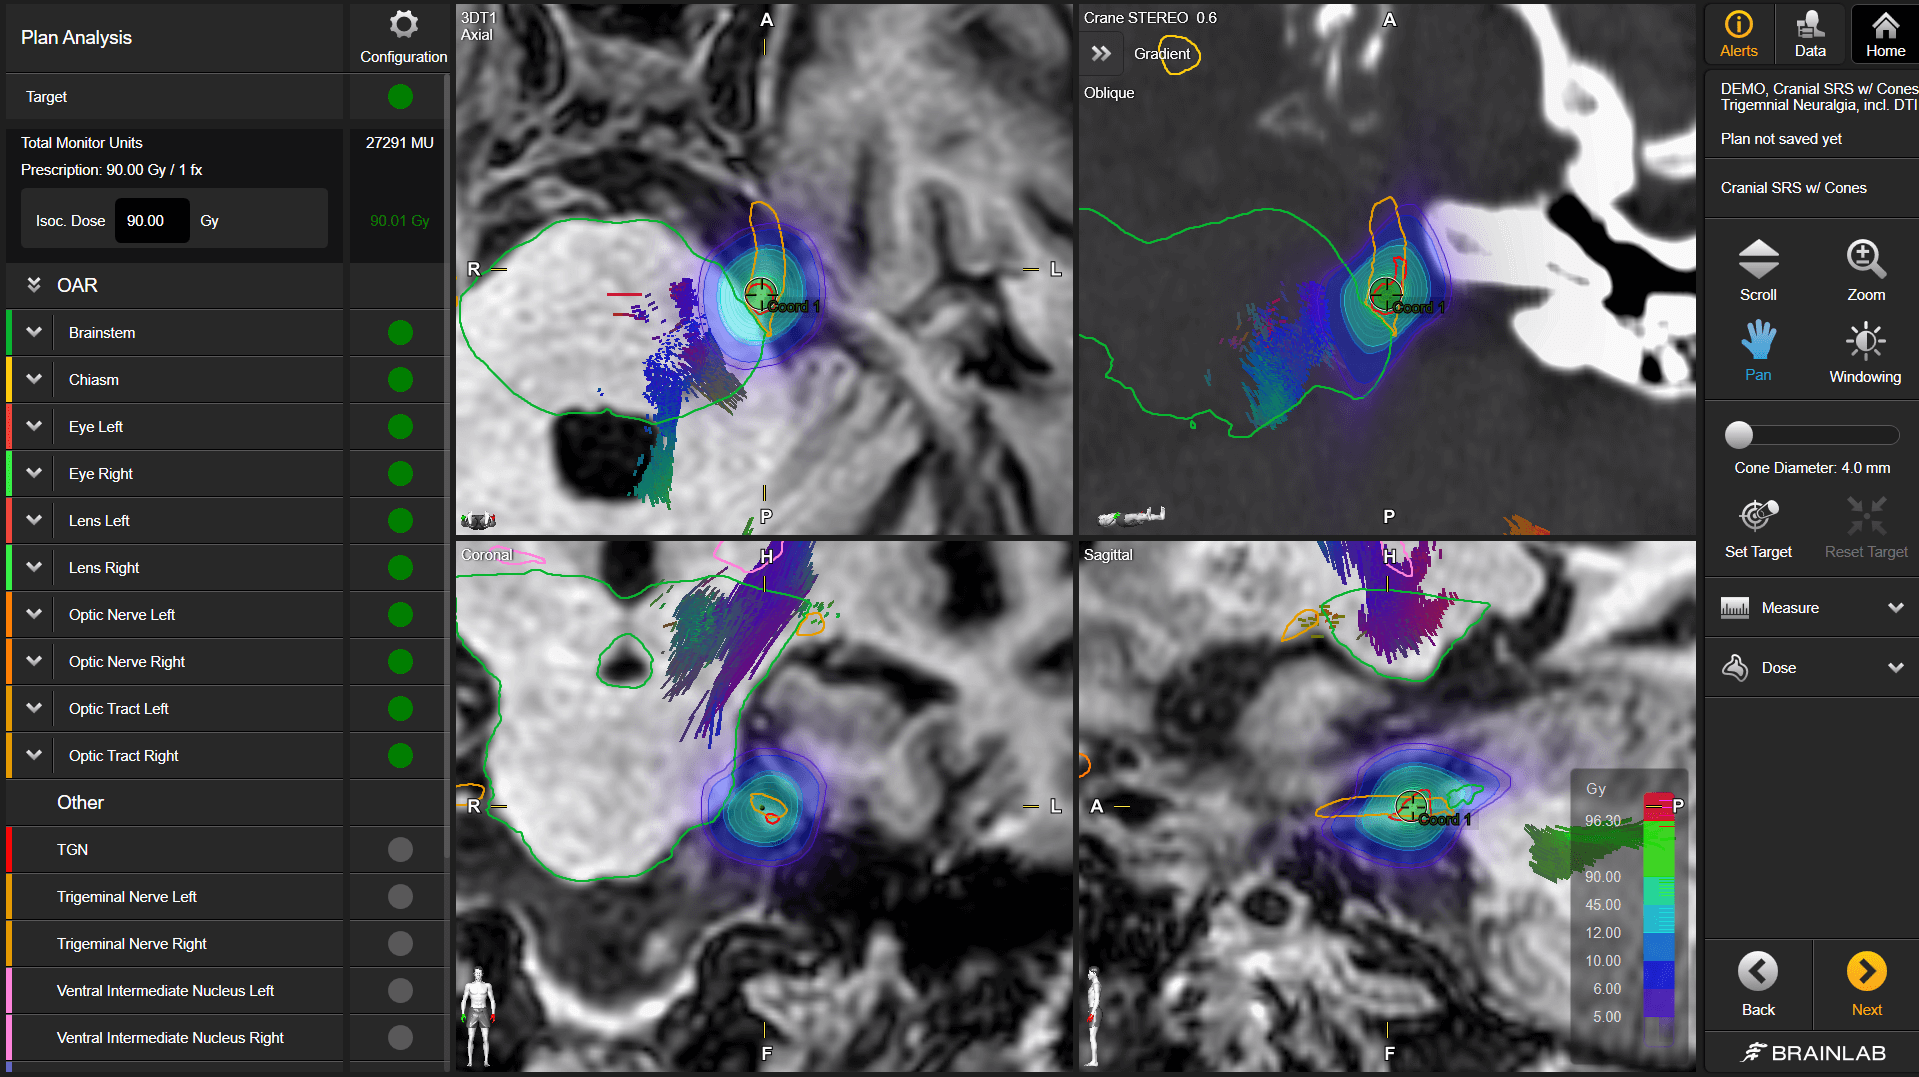 Экран программного обеспечения Fibertracking, показывающий черно-белый снимок мозга с цветными нервными волокнами, используемый для оптимизации планирования процедур лучевой терапии.